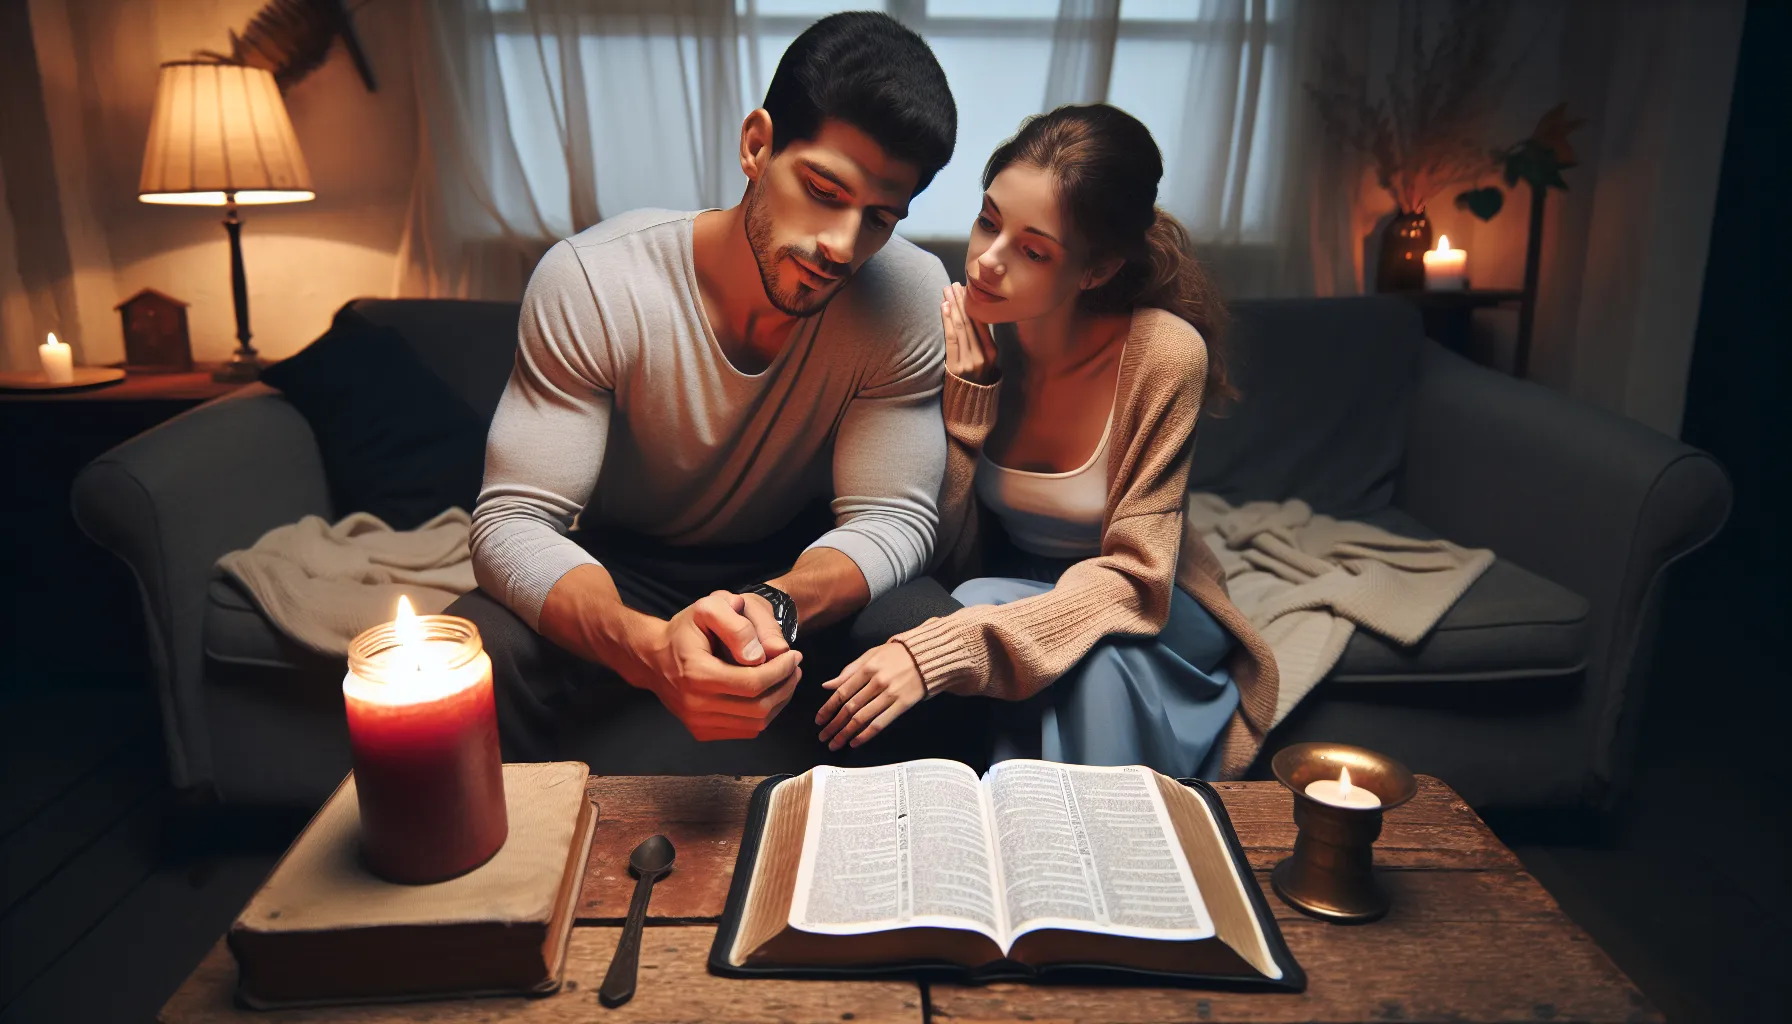 Cómo abordar bíblicamente la vida íntima en la relación matrimonial desde la perspectiva cristiana.